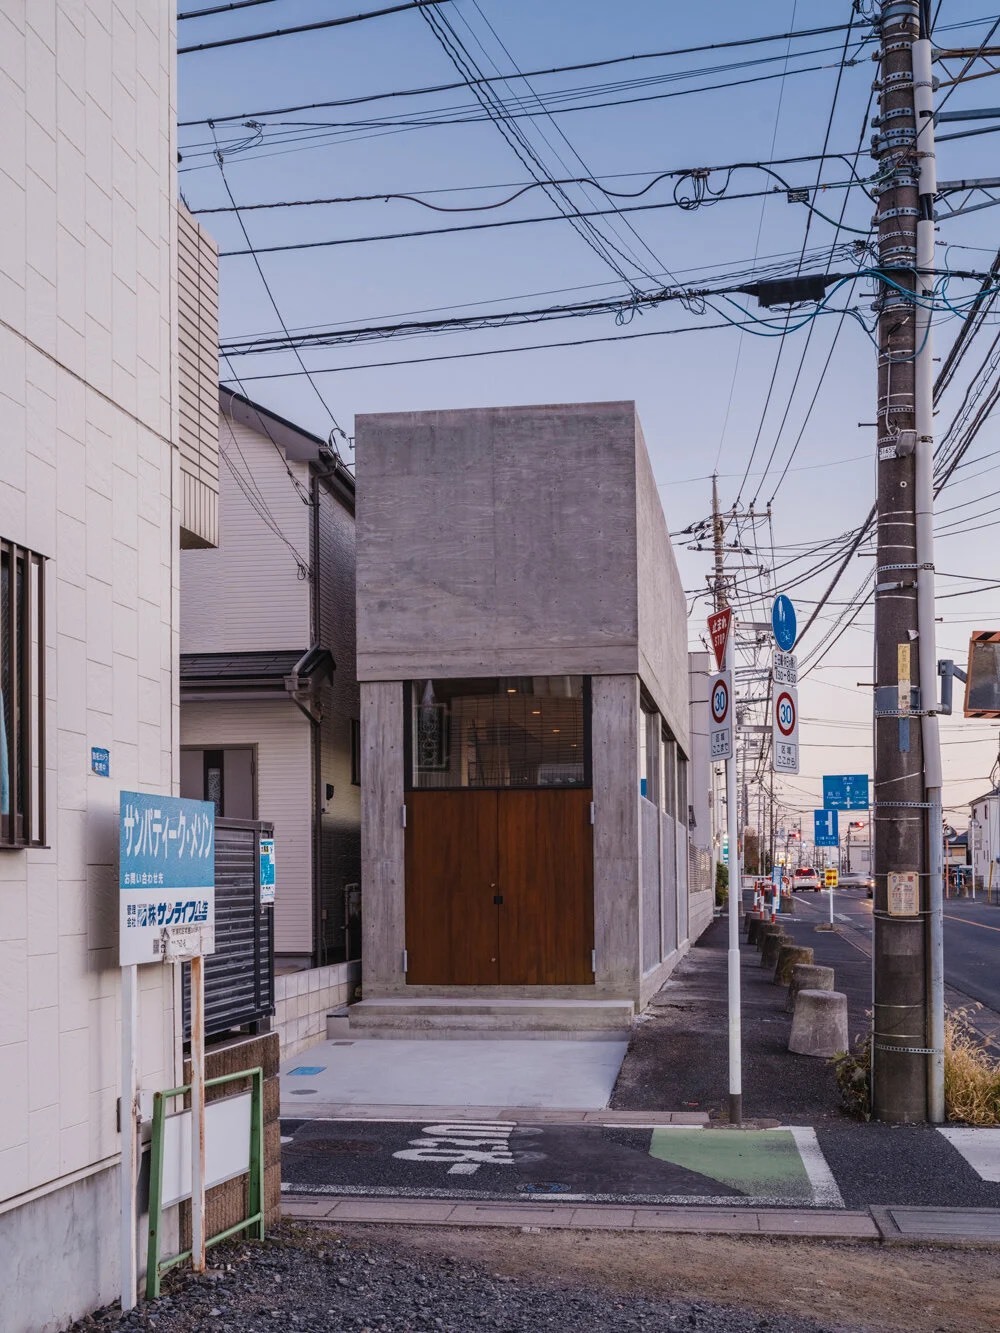 خانه جالب ژاپنی که فقط 2.9 متر عرض دارد!